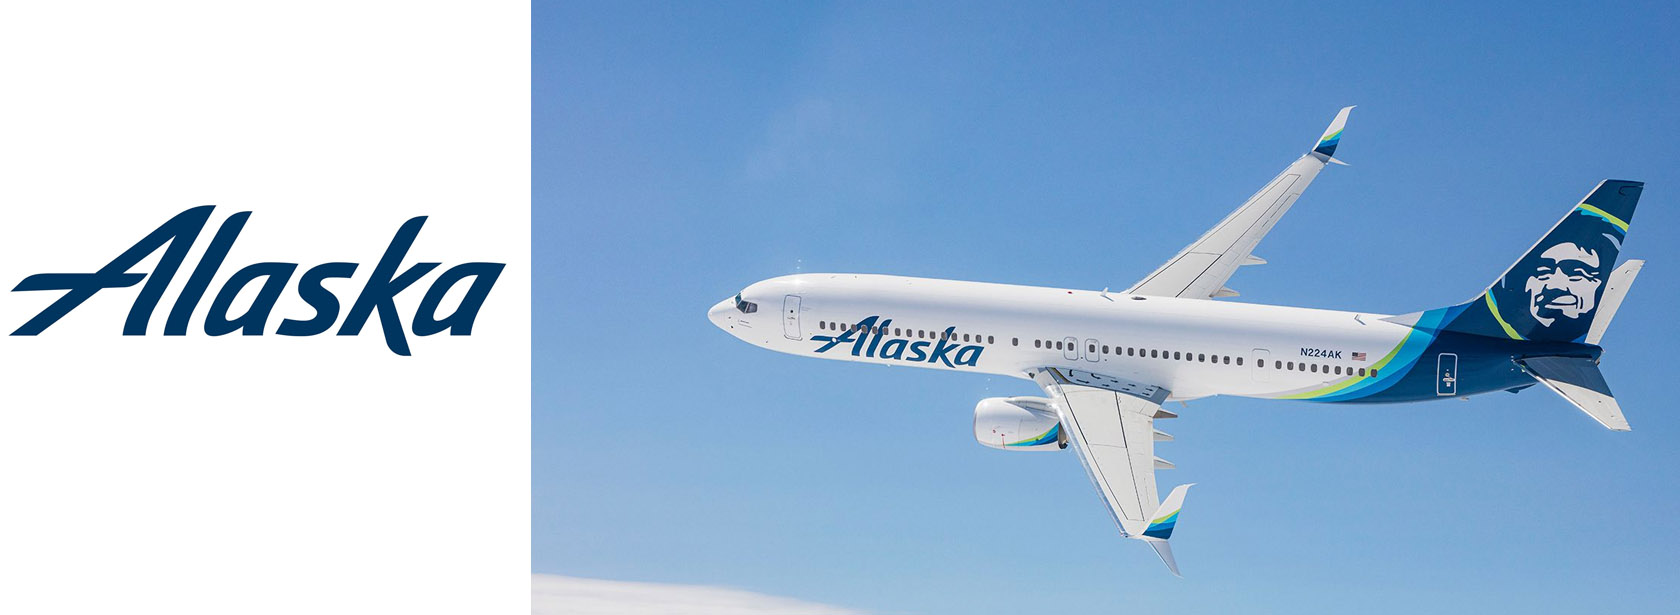 Alaska Airlines airline JFK airport